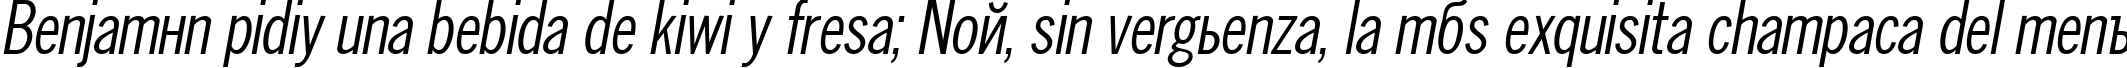 Пример написания шрифтом NewsCondensed Oblique текста на испанском